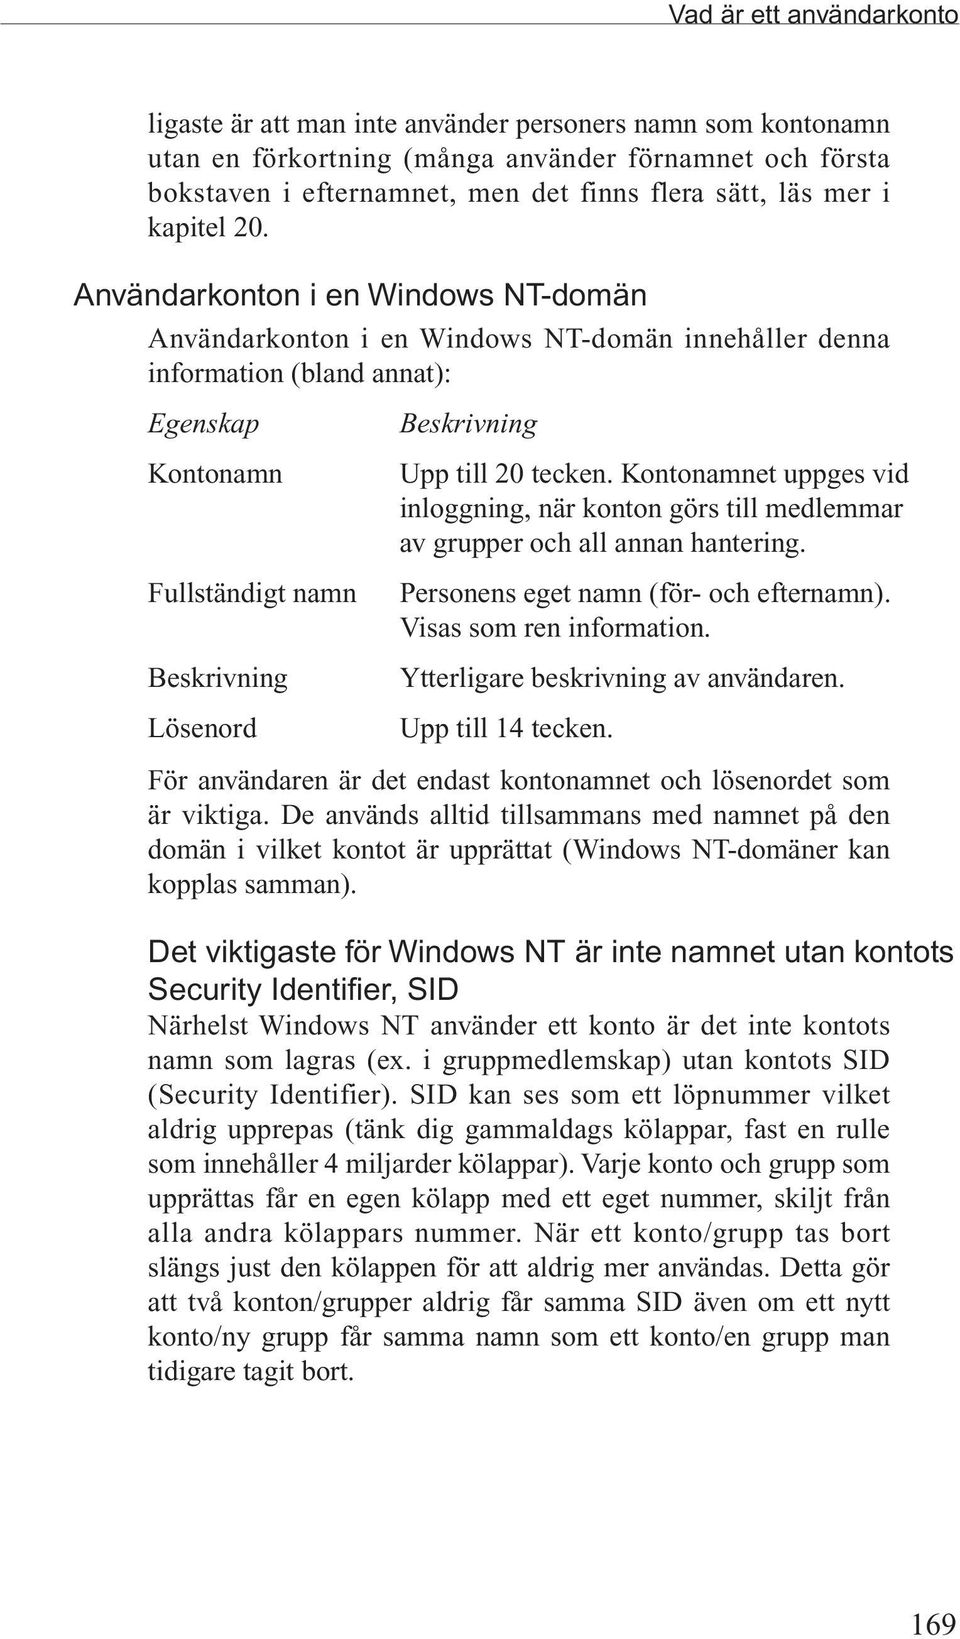 Användarkonton i en Windows NT-domän Användarkonton i en Windows NT-domän innehåller denna information (bland annat): Egenskap Kontonamn Fullständigt namn Beskrivning Lösenord Beskrivning Upp till 20